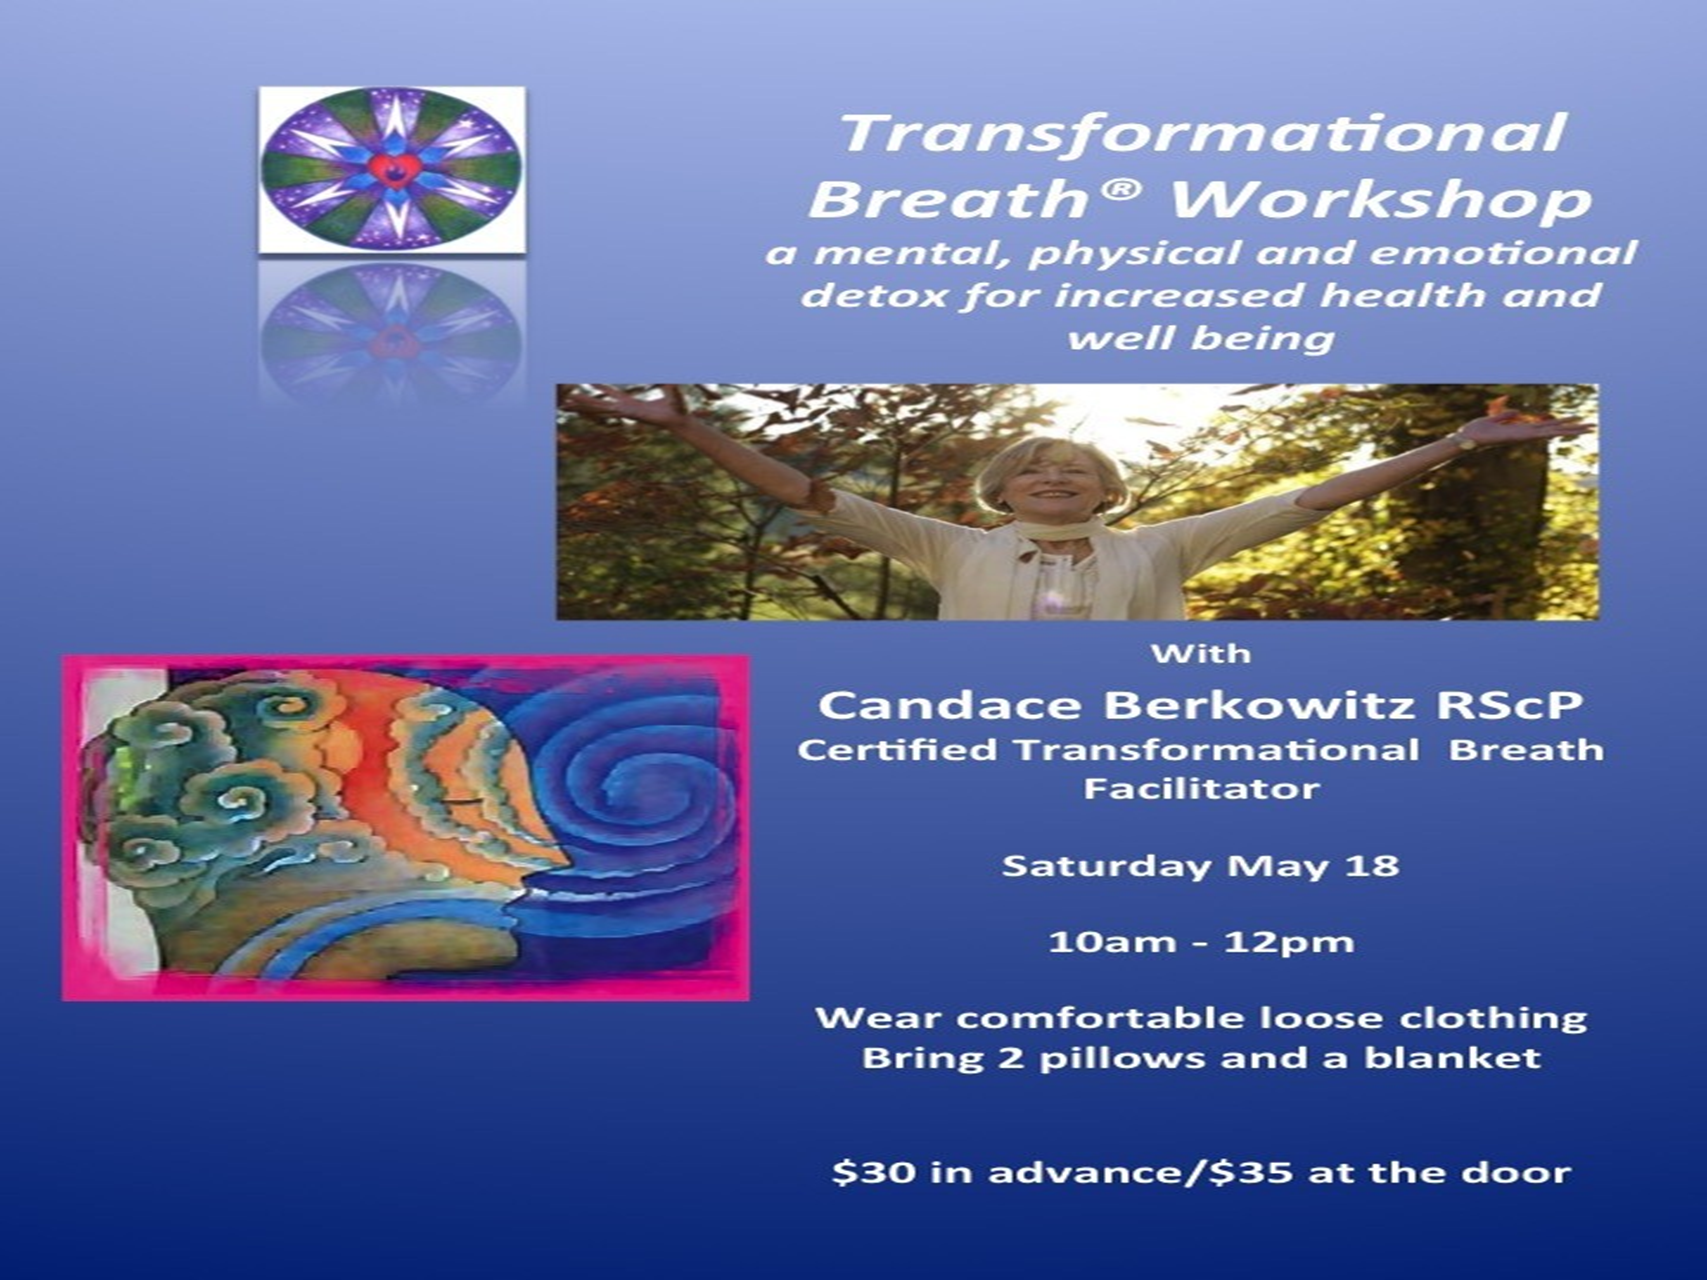 Transitional Breathwork Workshop Flyer Announcement Version - Center